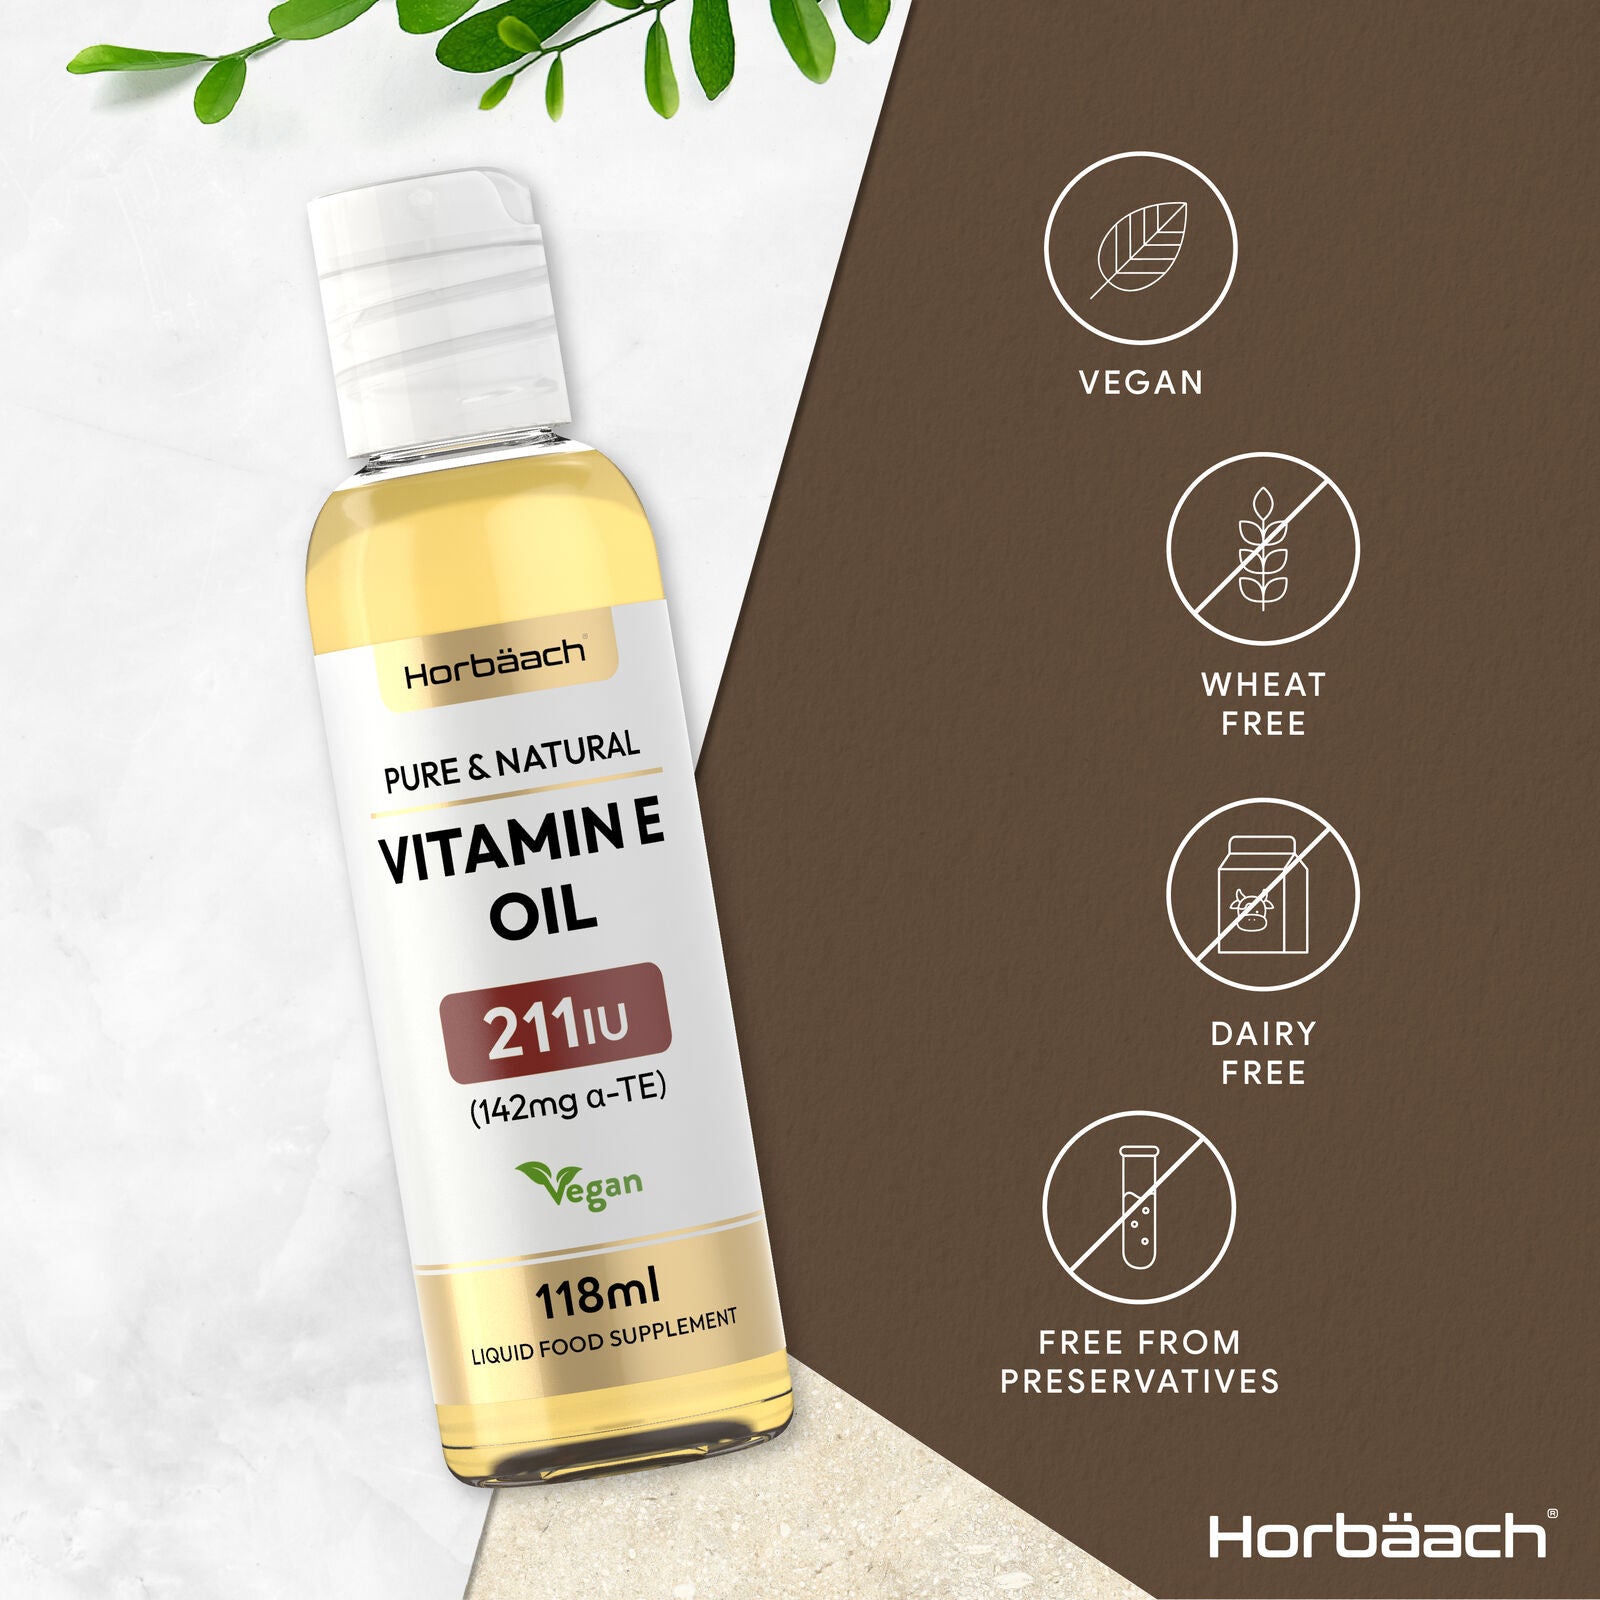 Vitamin E Oil 211 IU | 236 mL